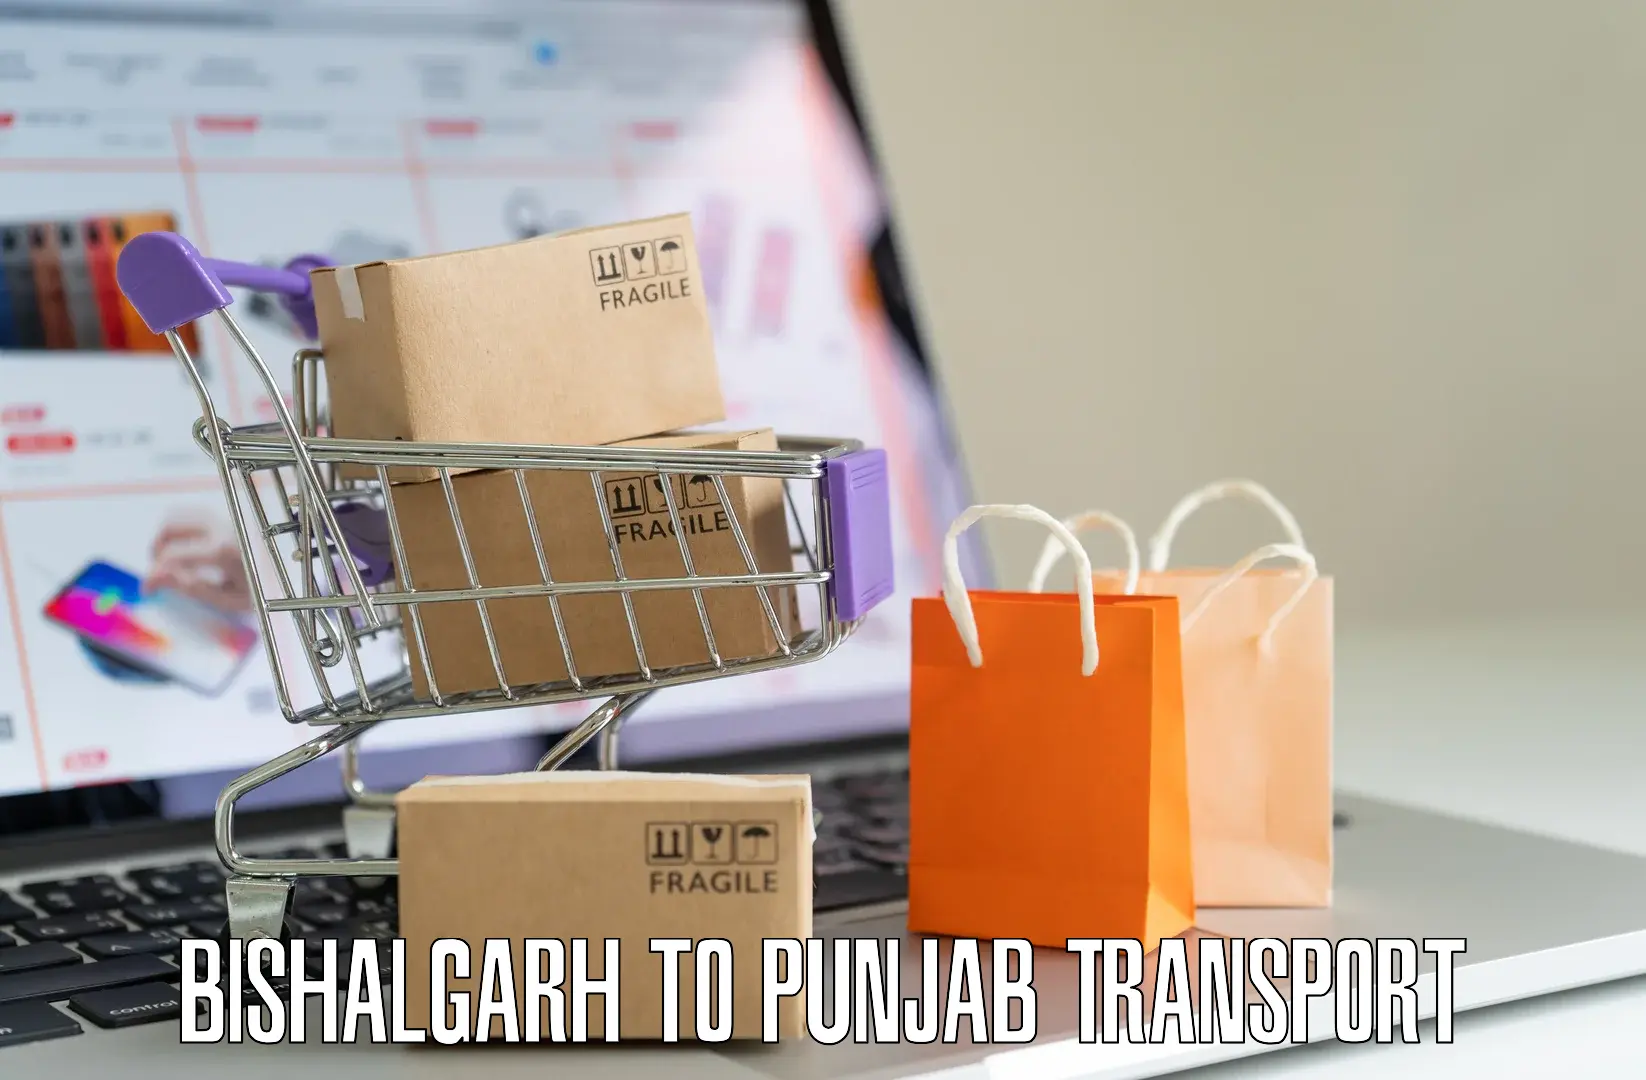 Container transport service Bishalgarh to Punjab